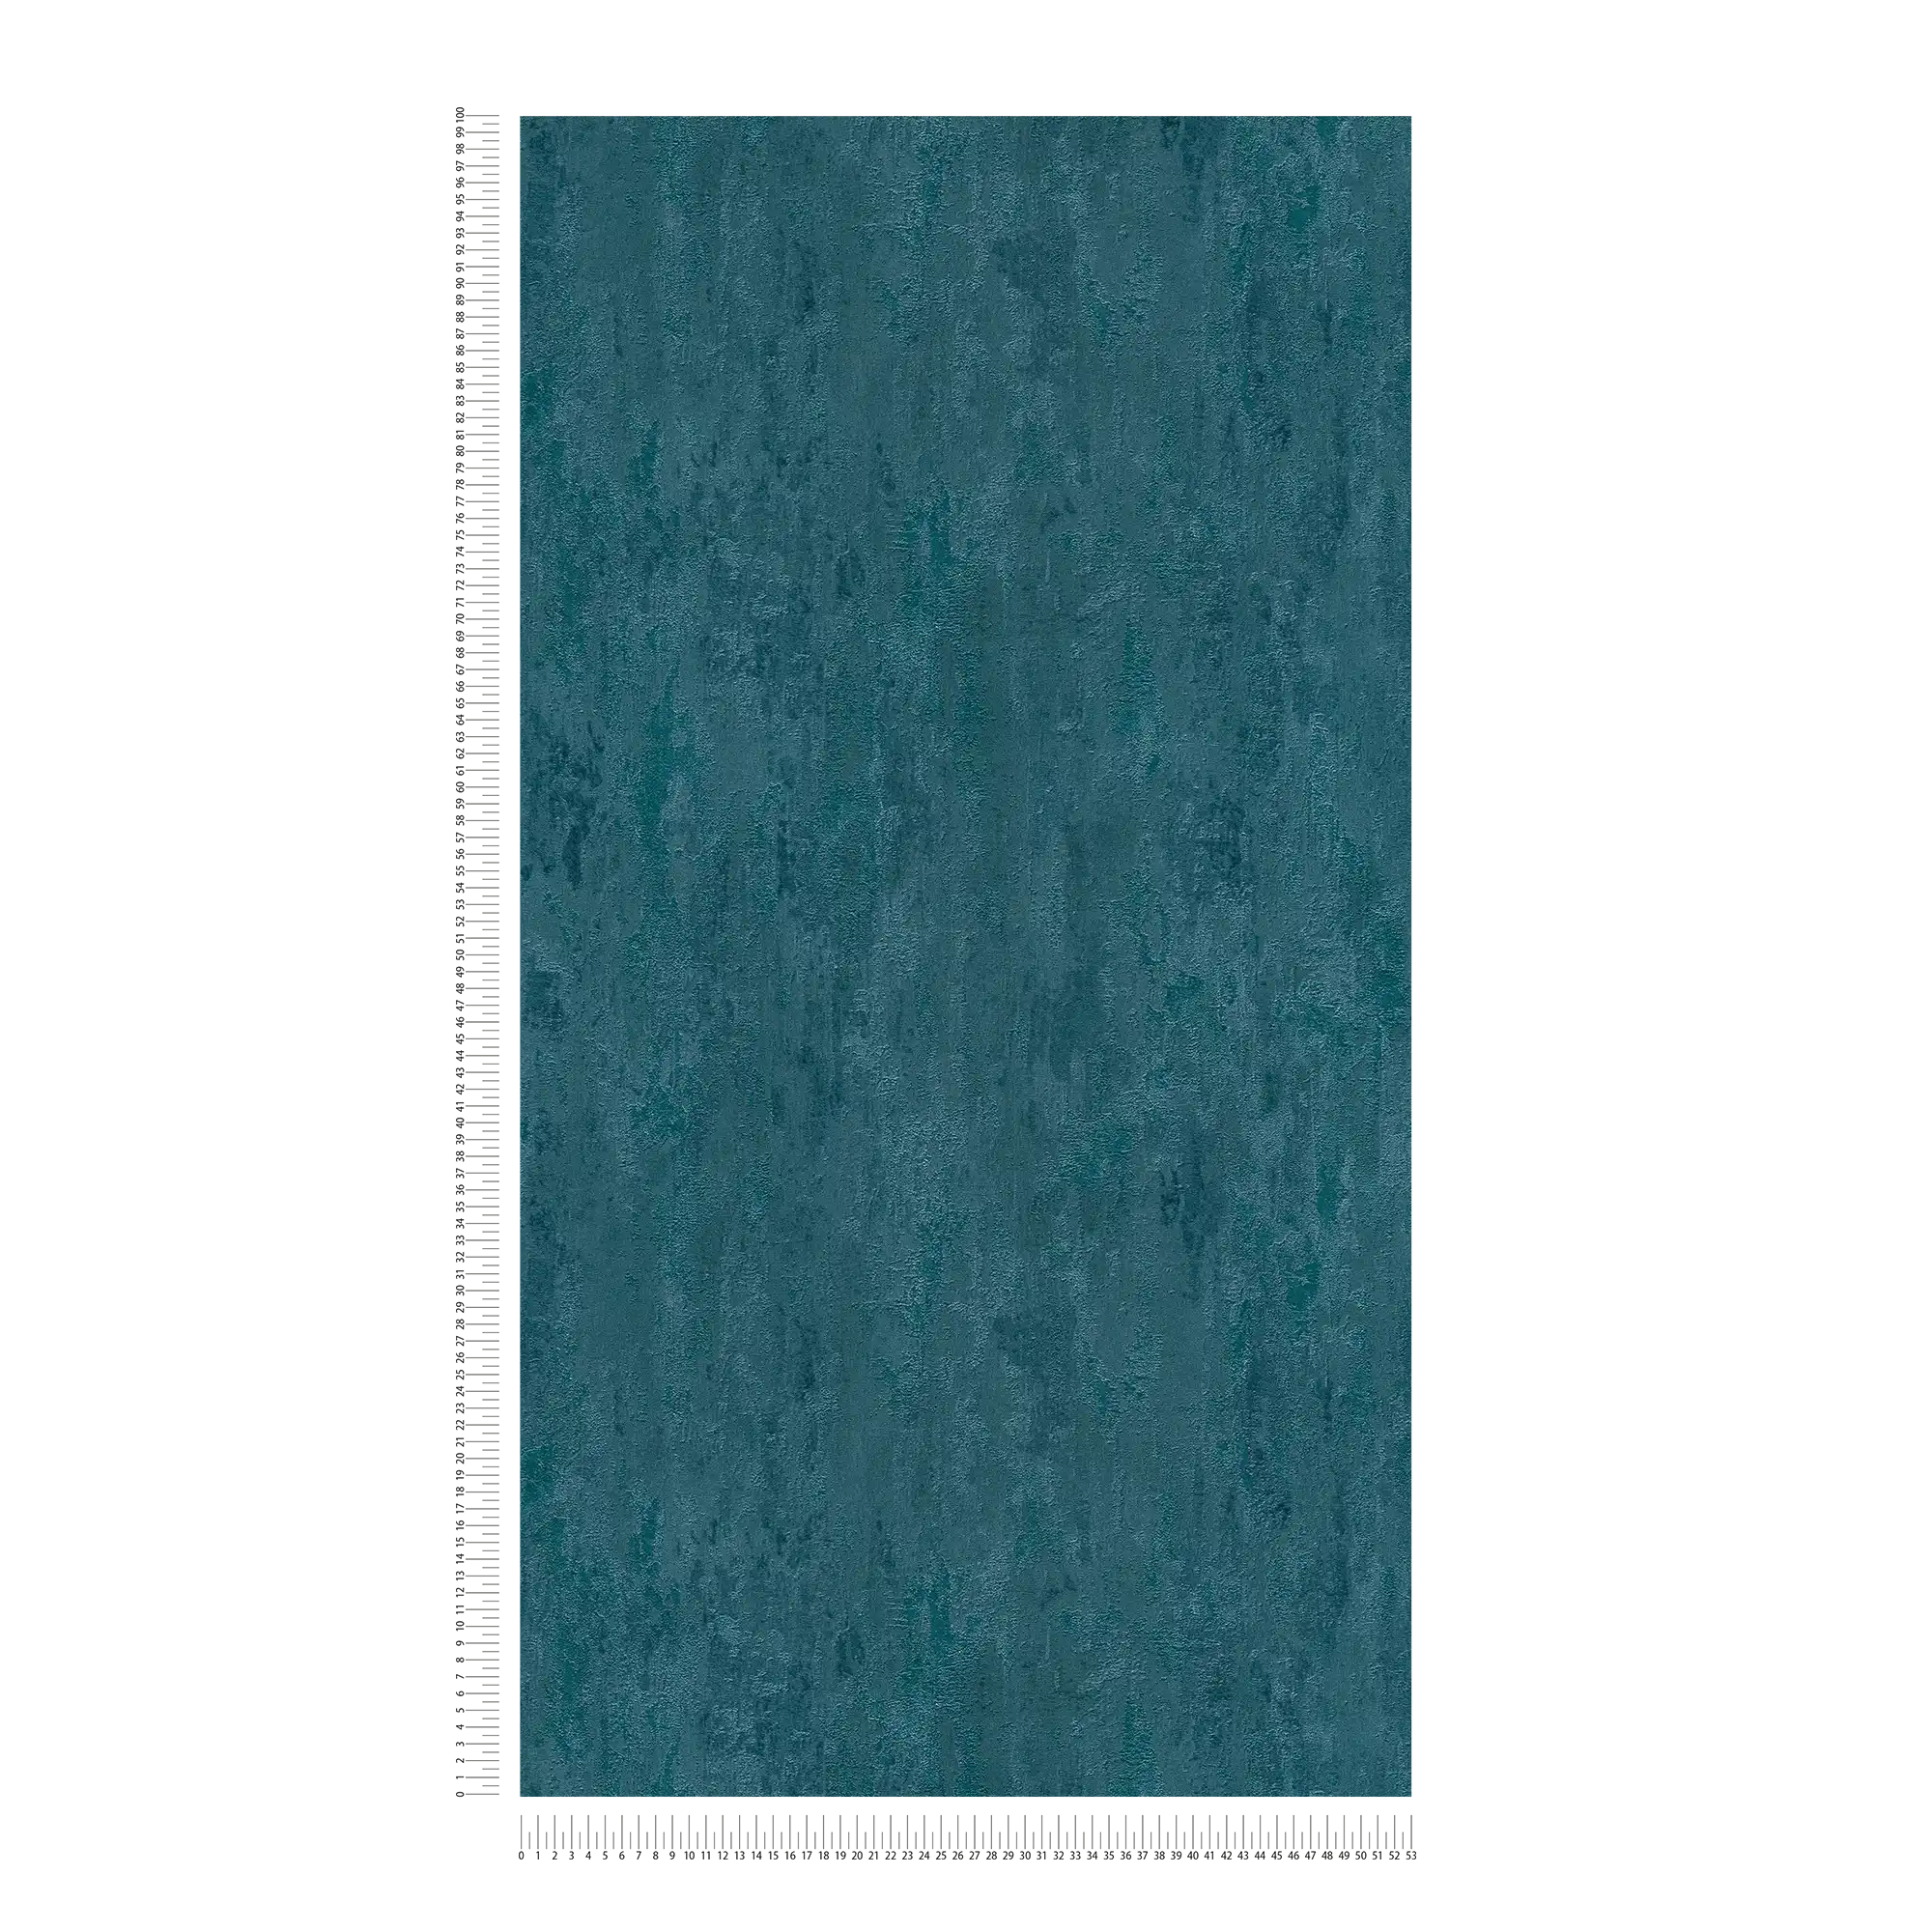             papel pintado estilo industrial con efecto de textura - azul, metálico
        